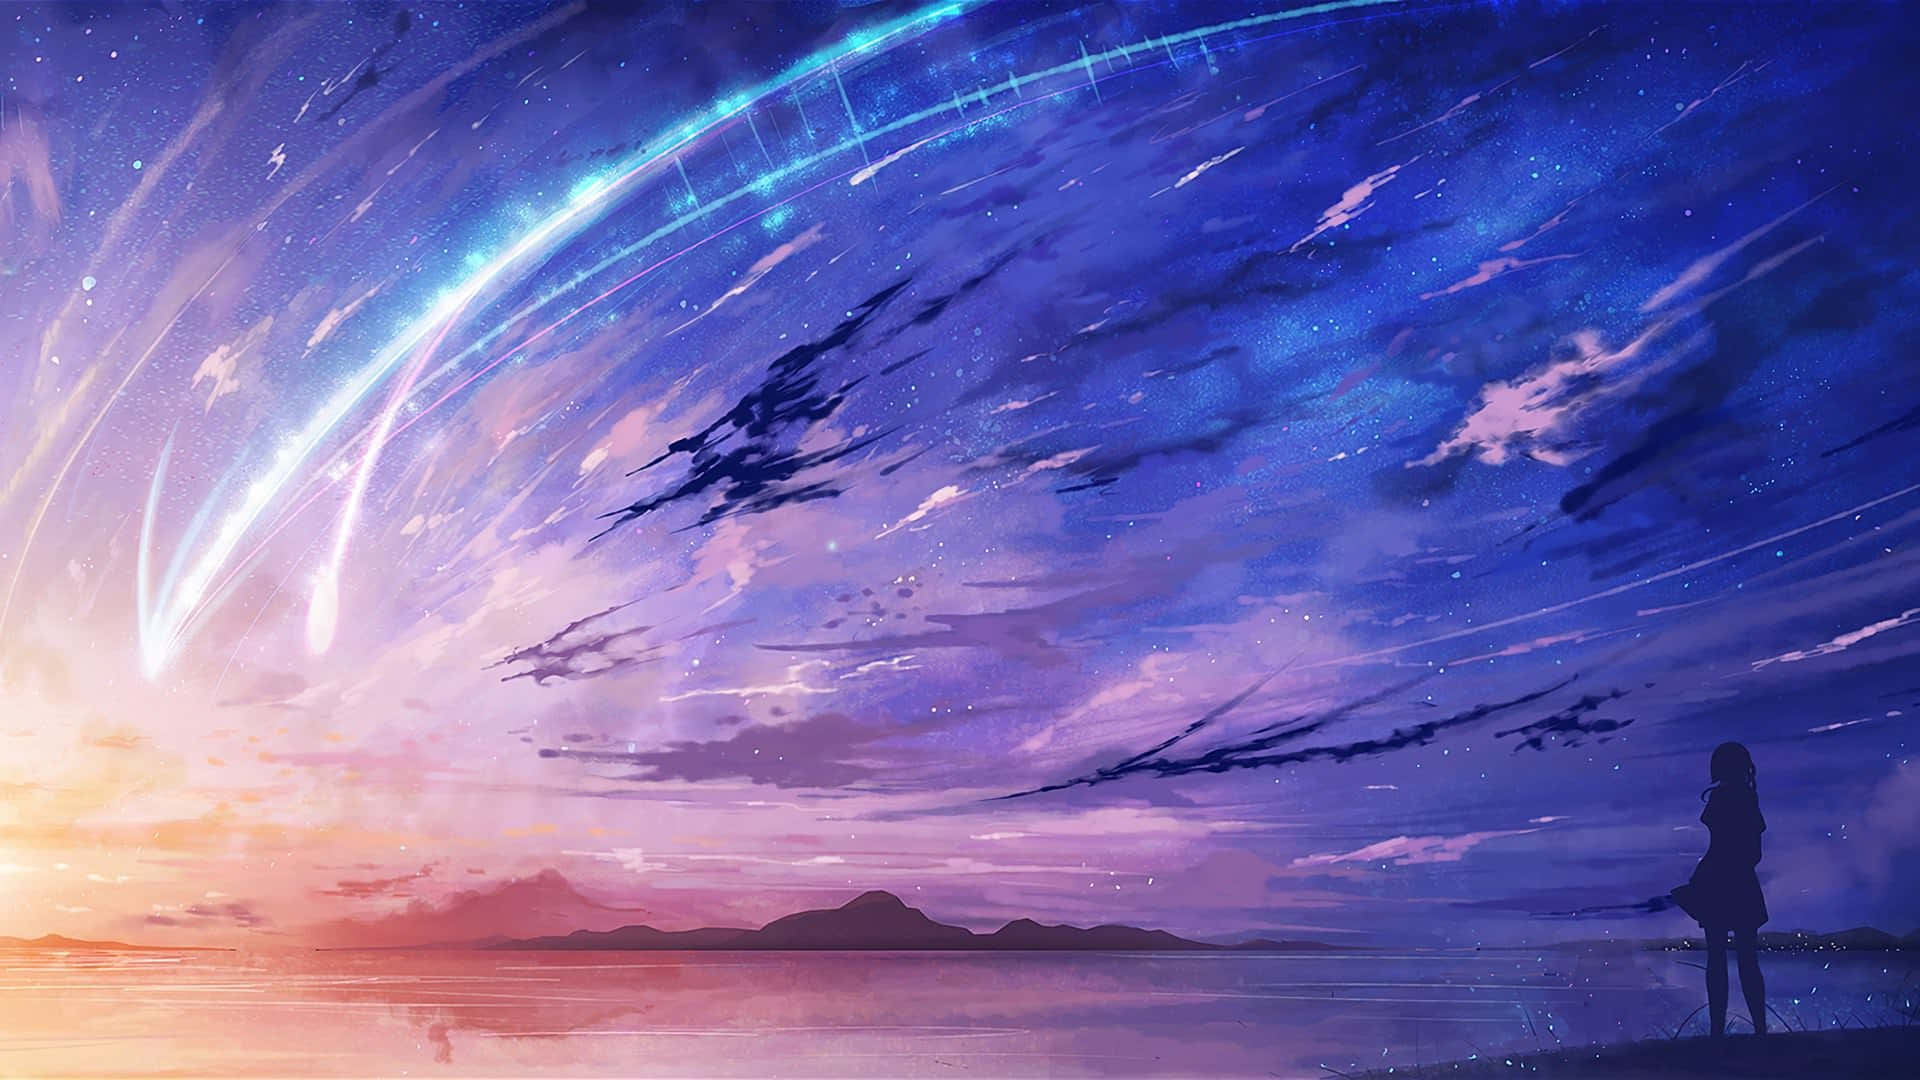 Upplevskönheten I En Häpnadsväckande Anime-inspirerad Himmel. Wallpaper